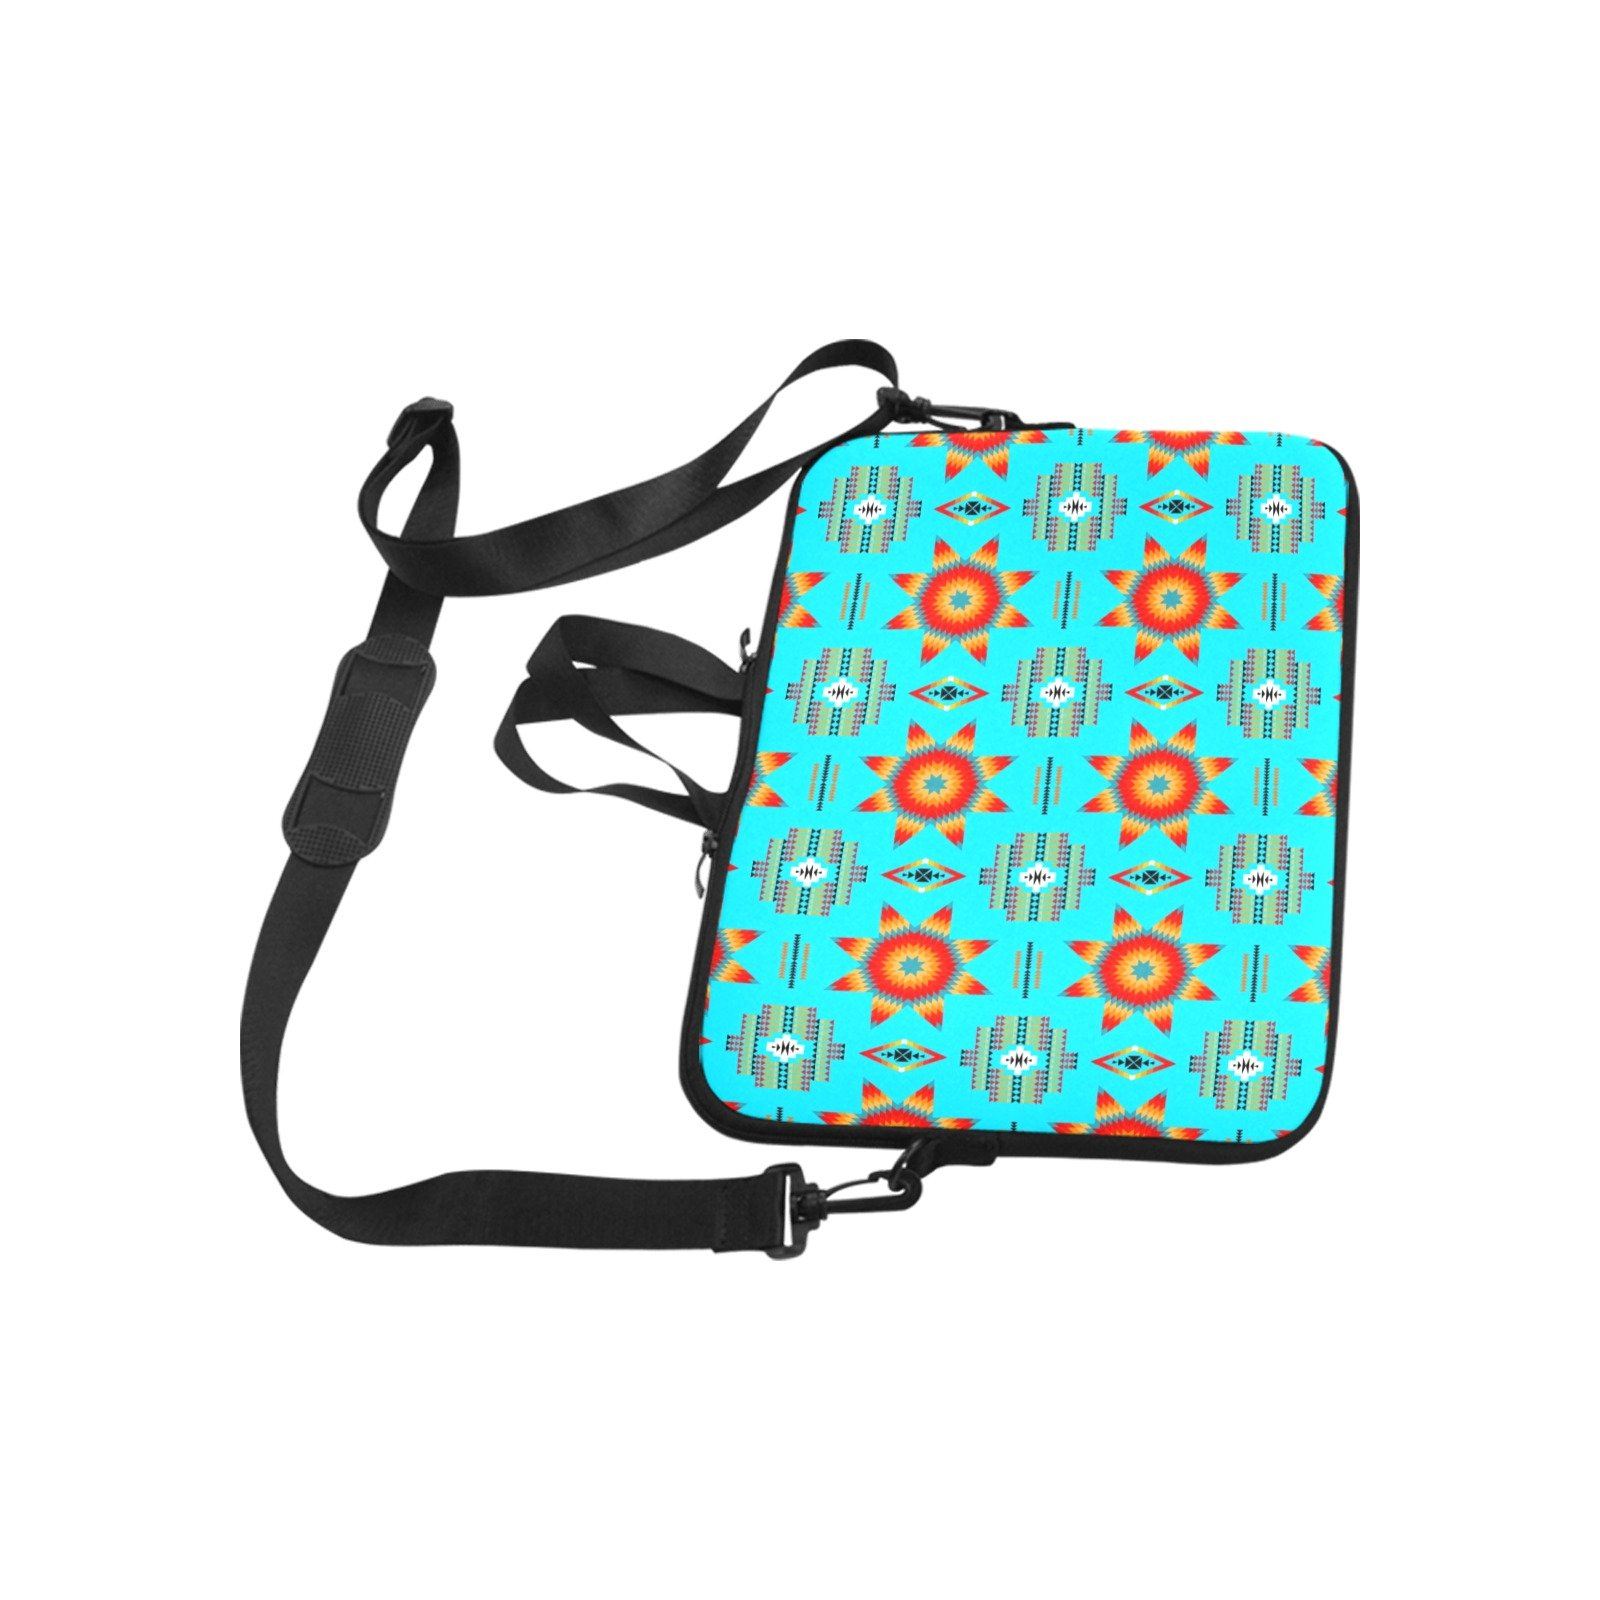 Rising Star Harvest Moon Laptop Handbags 11" bag e-joyer 